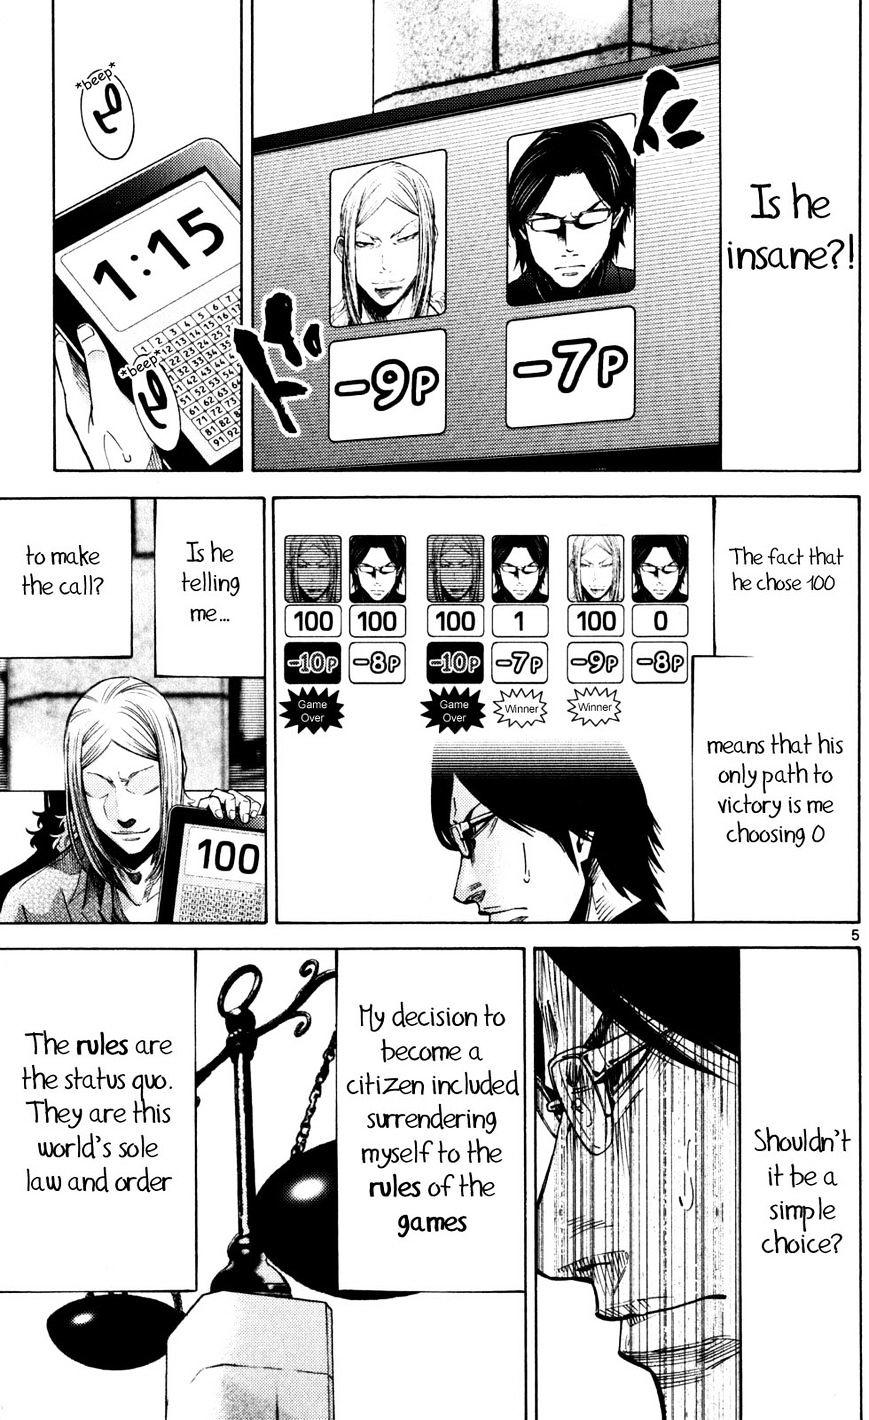 Imawa No Kuni No Alice Chapter 51.5 : Side Story 6 - King Of Diamonds (5) page 5 - Mangakakalot